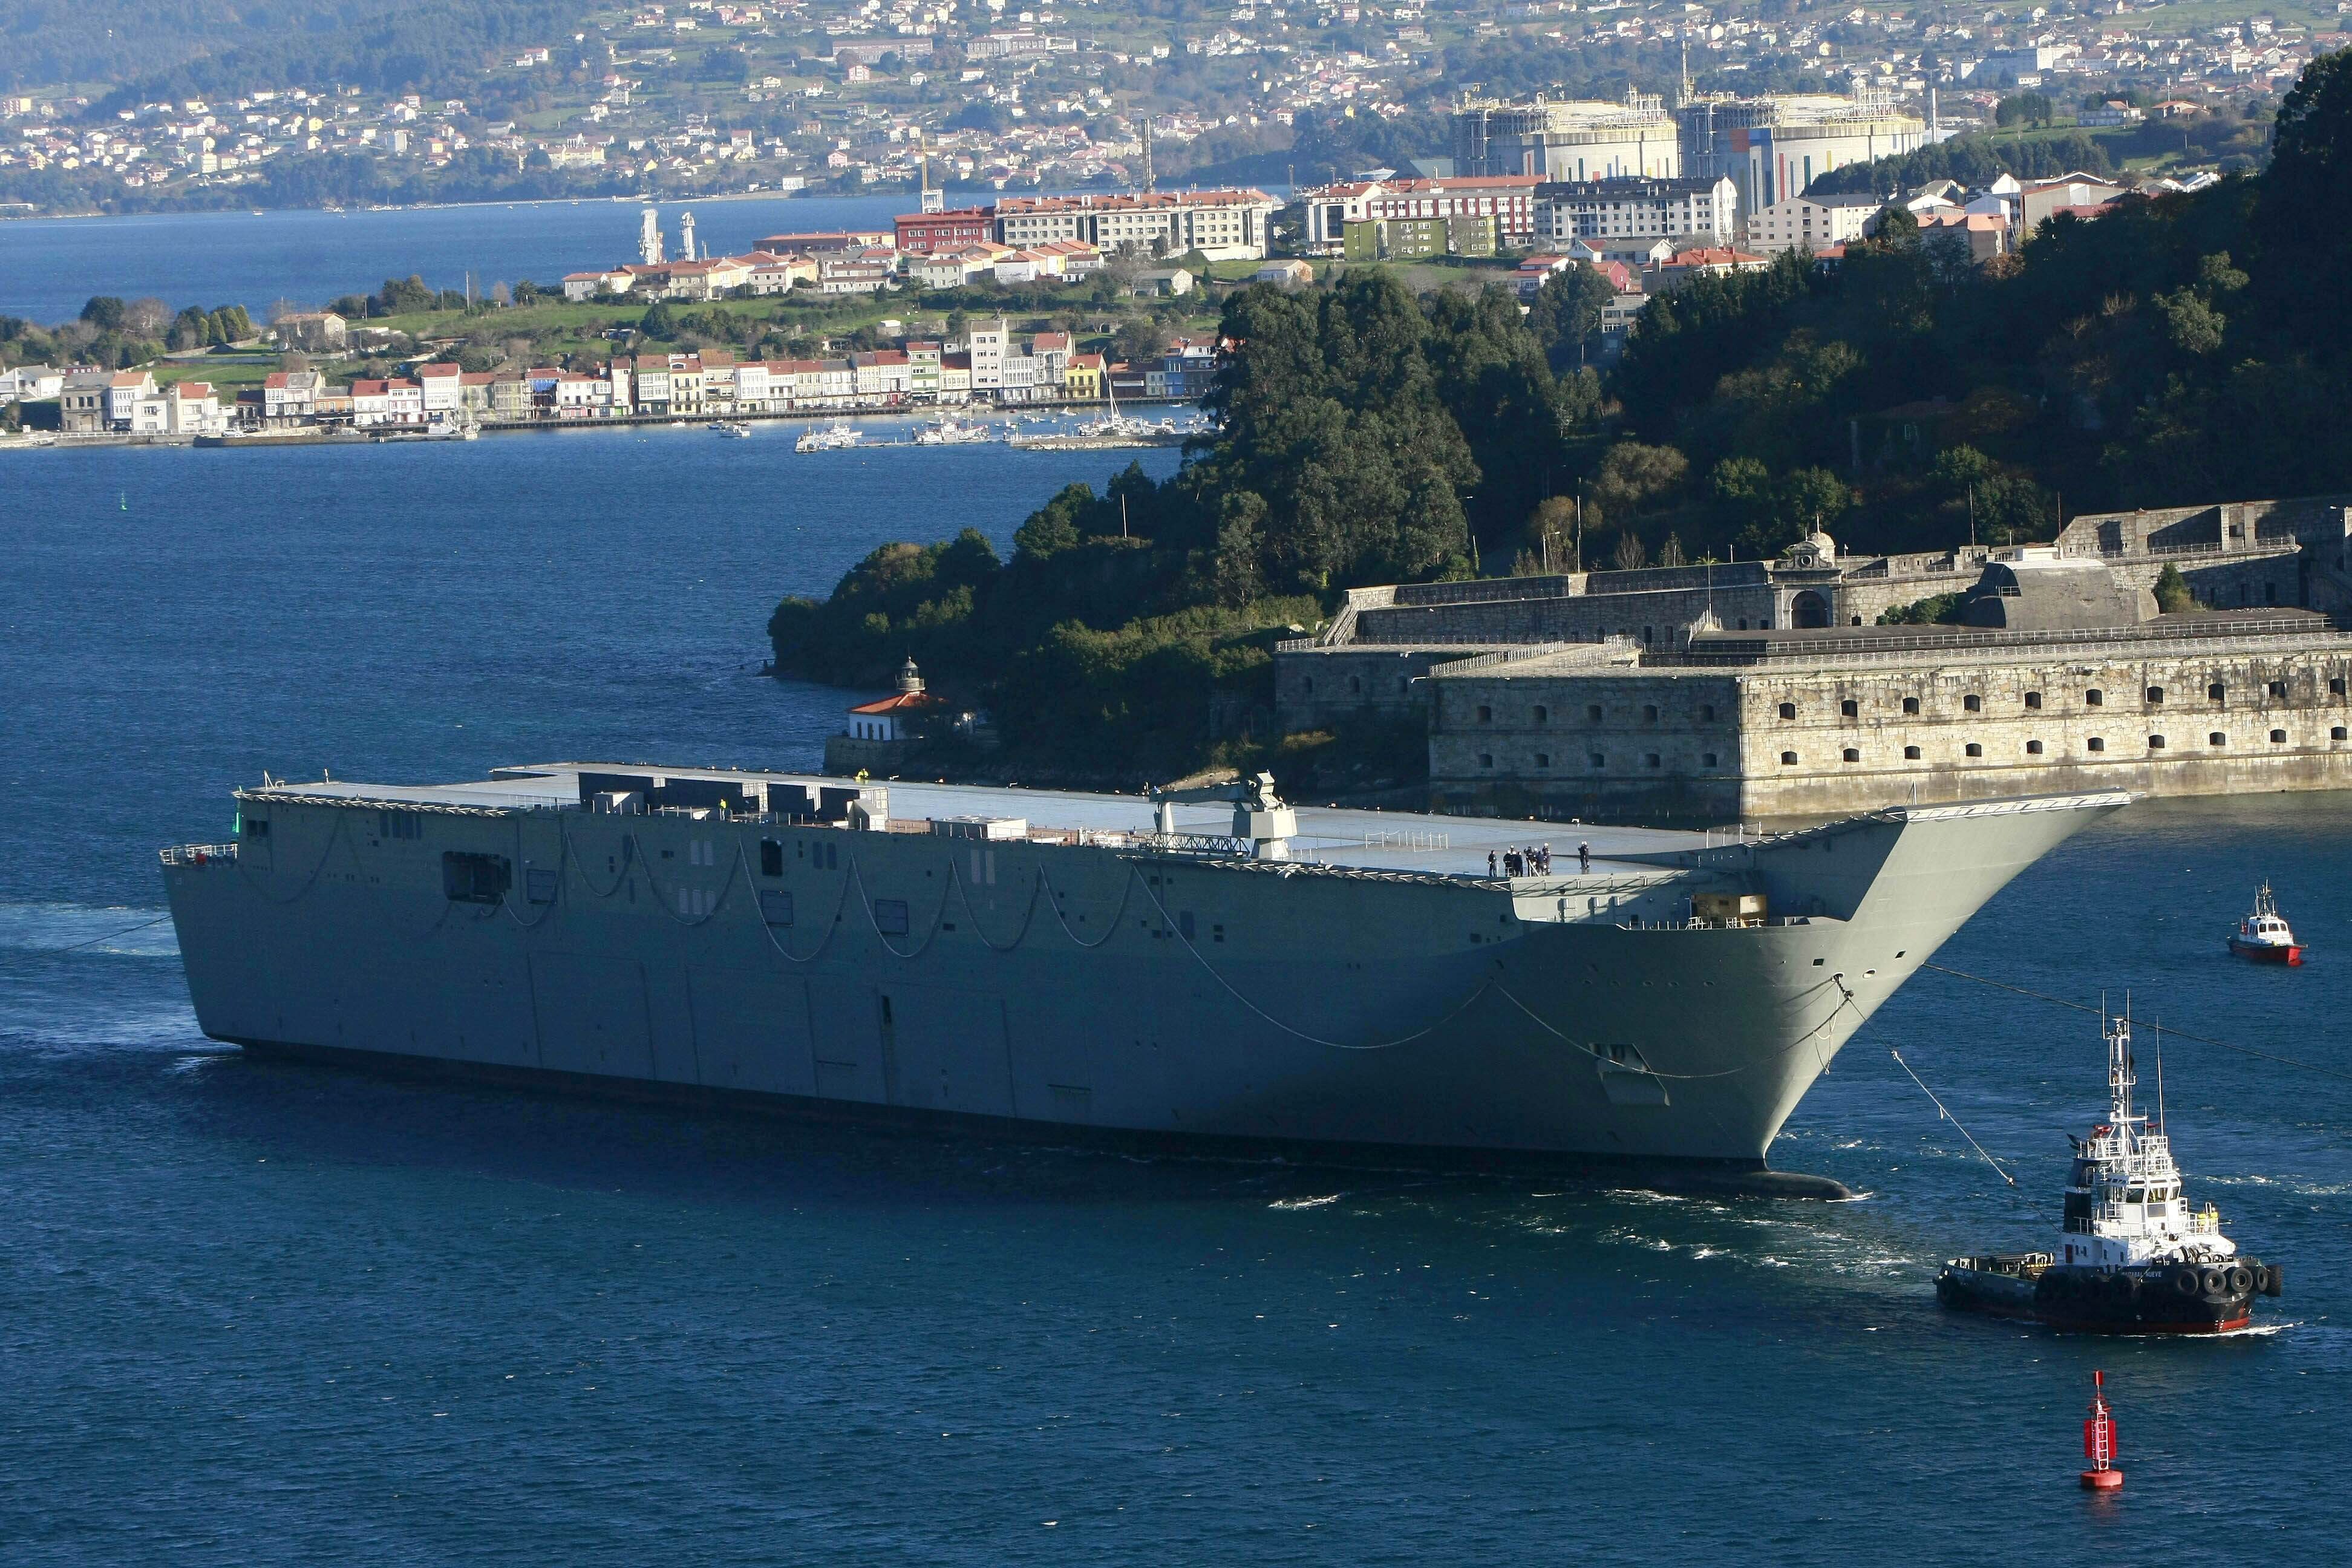 El futuro de la industria de Defensa (IV): Navantia, el estandarte naval